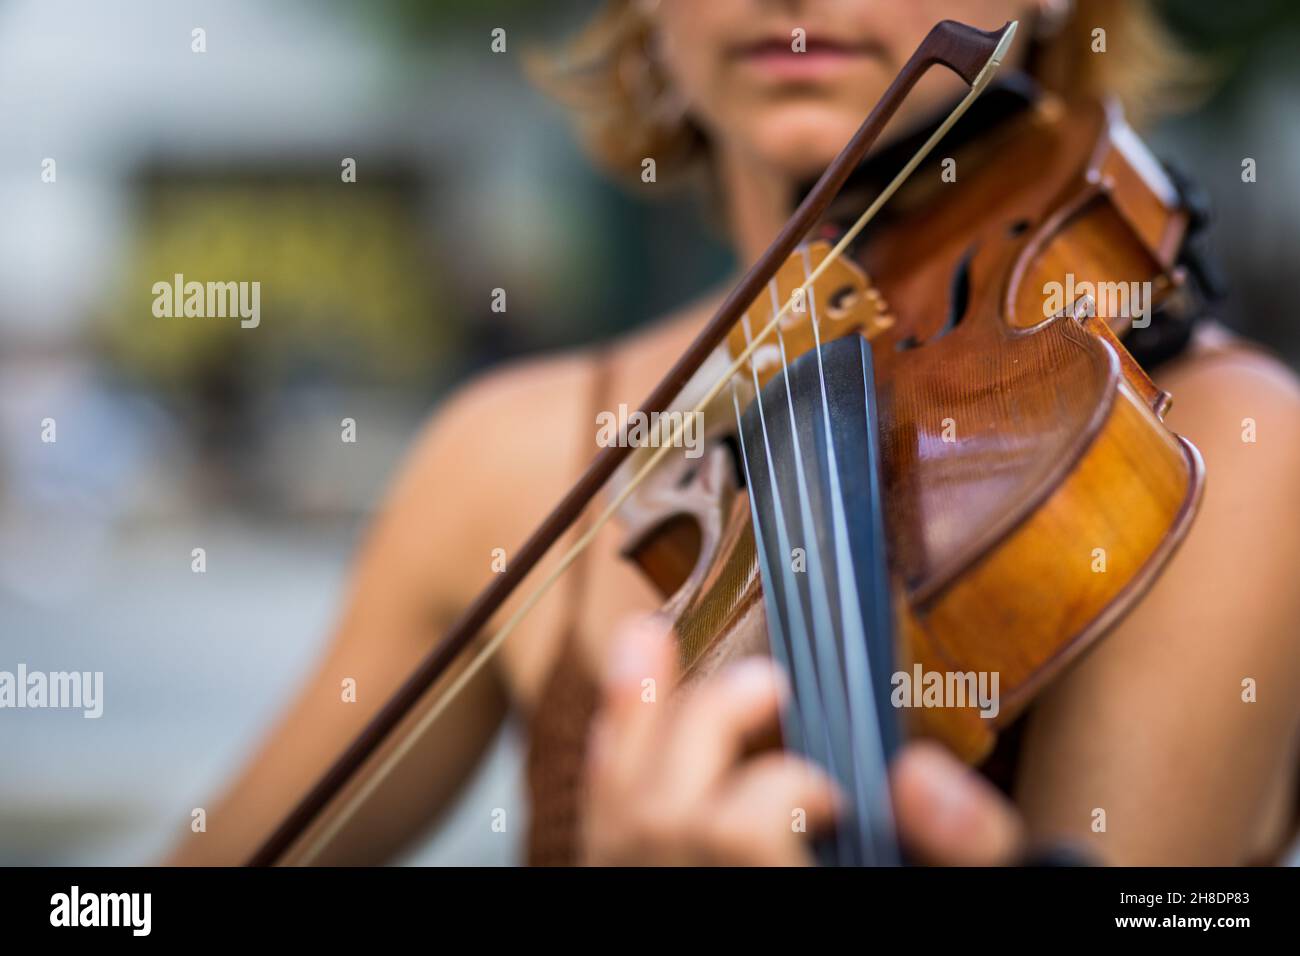 Détail d'un violoniste à cheveux rouges non reconnaissable jouant du violon dans la rue Banque D'Images